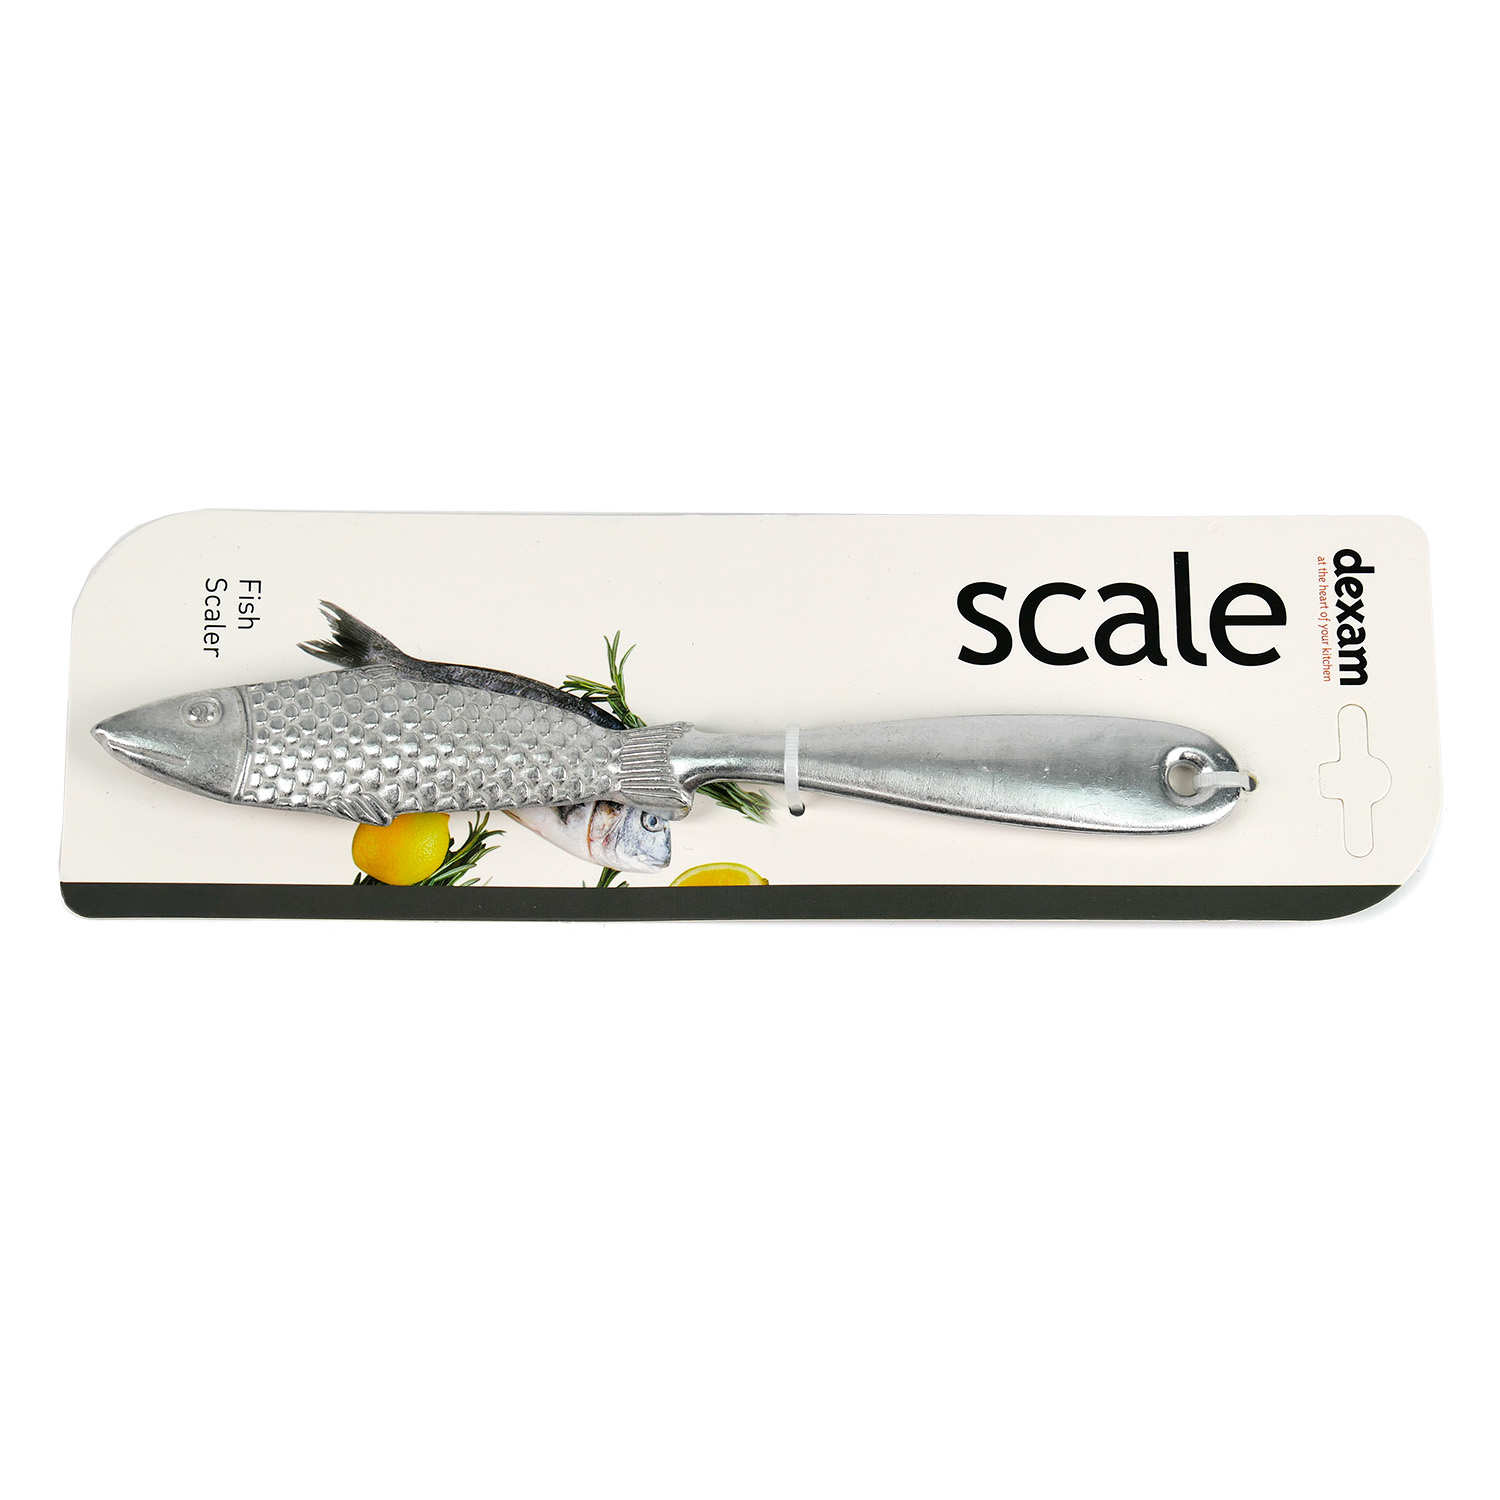 Fish scaler